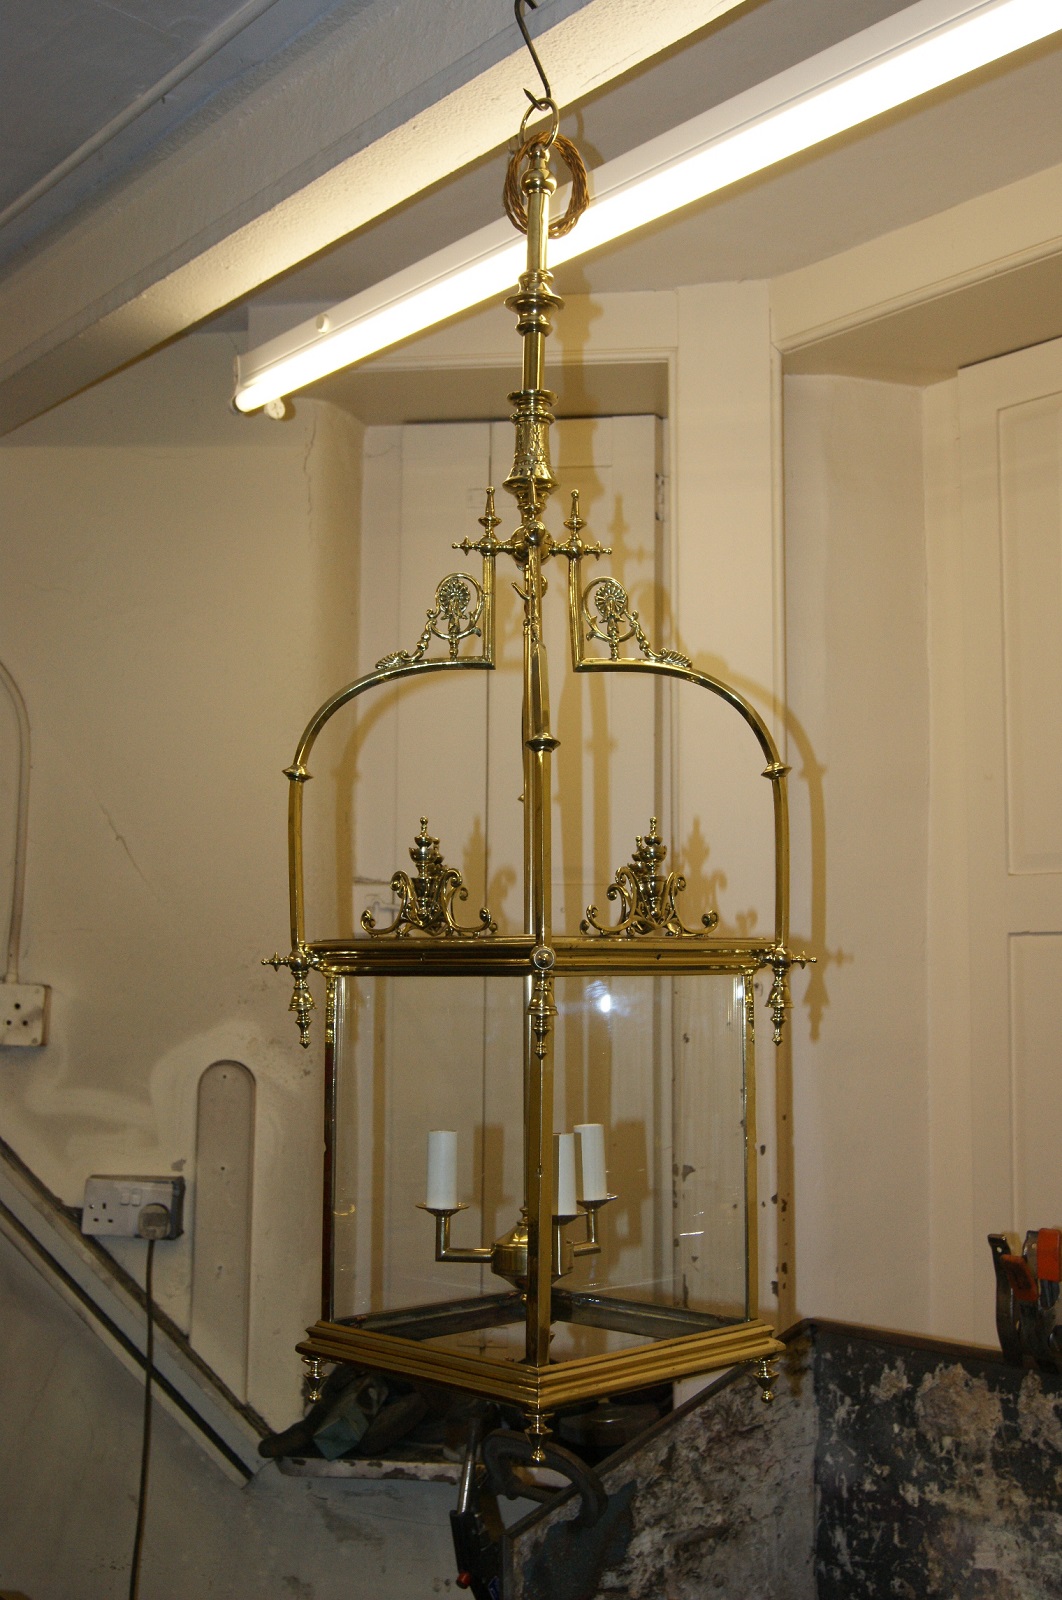 Brass lantern after restoration